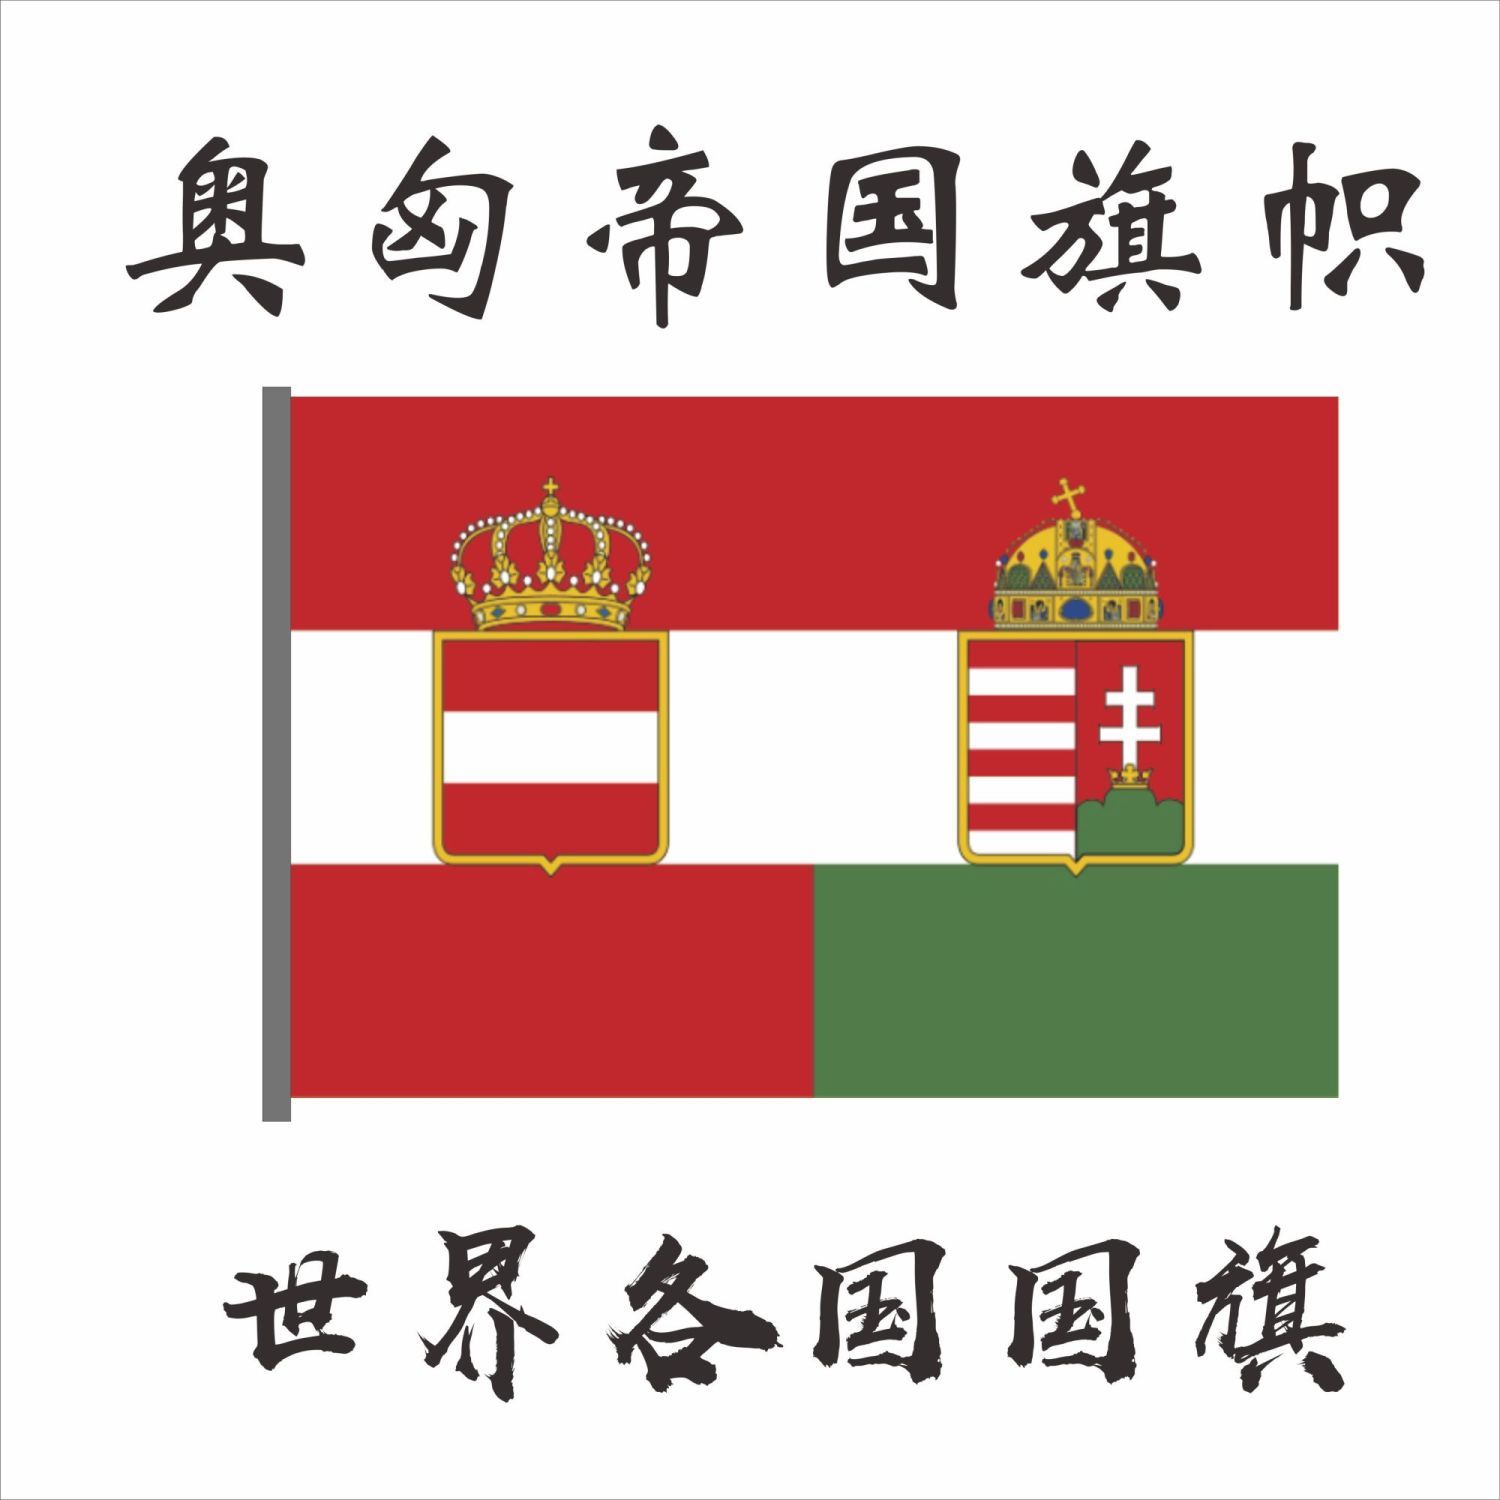 奥匈帝国旗帜 外国旗1号2号3号 4号 5号6号7号8号 尺寸可定制红旗